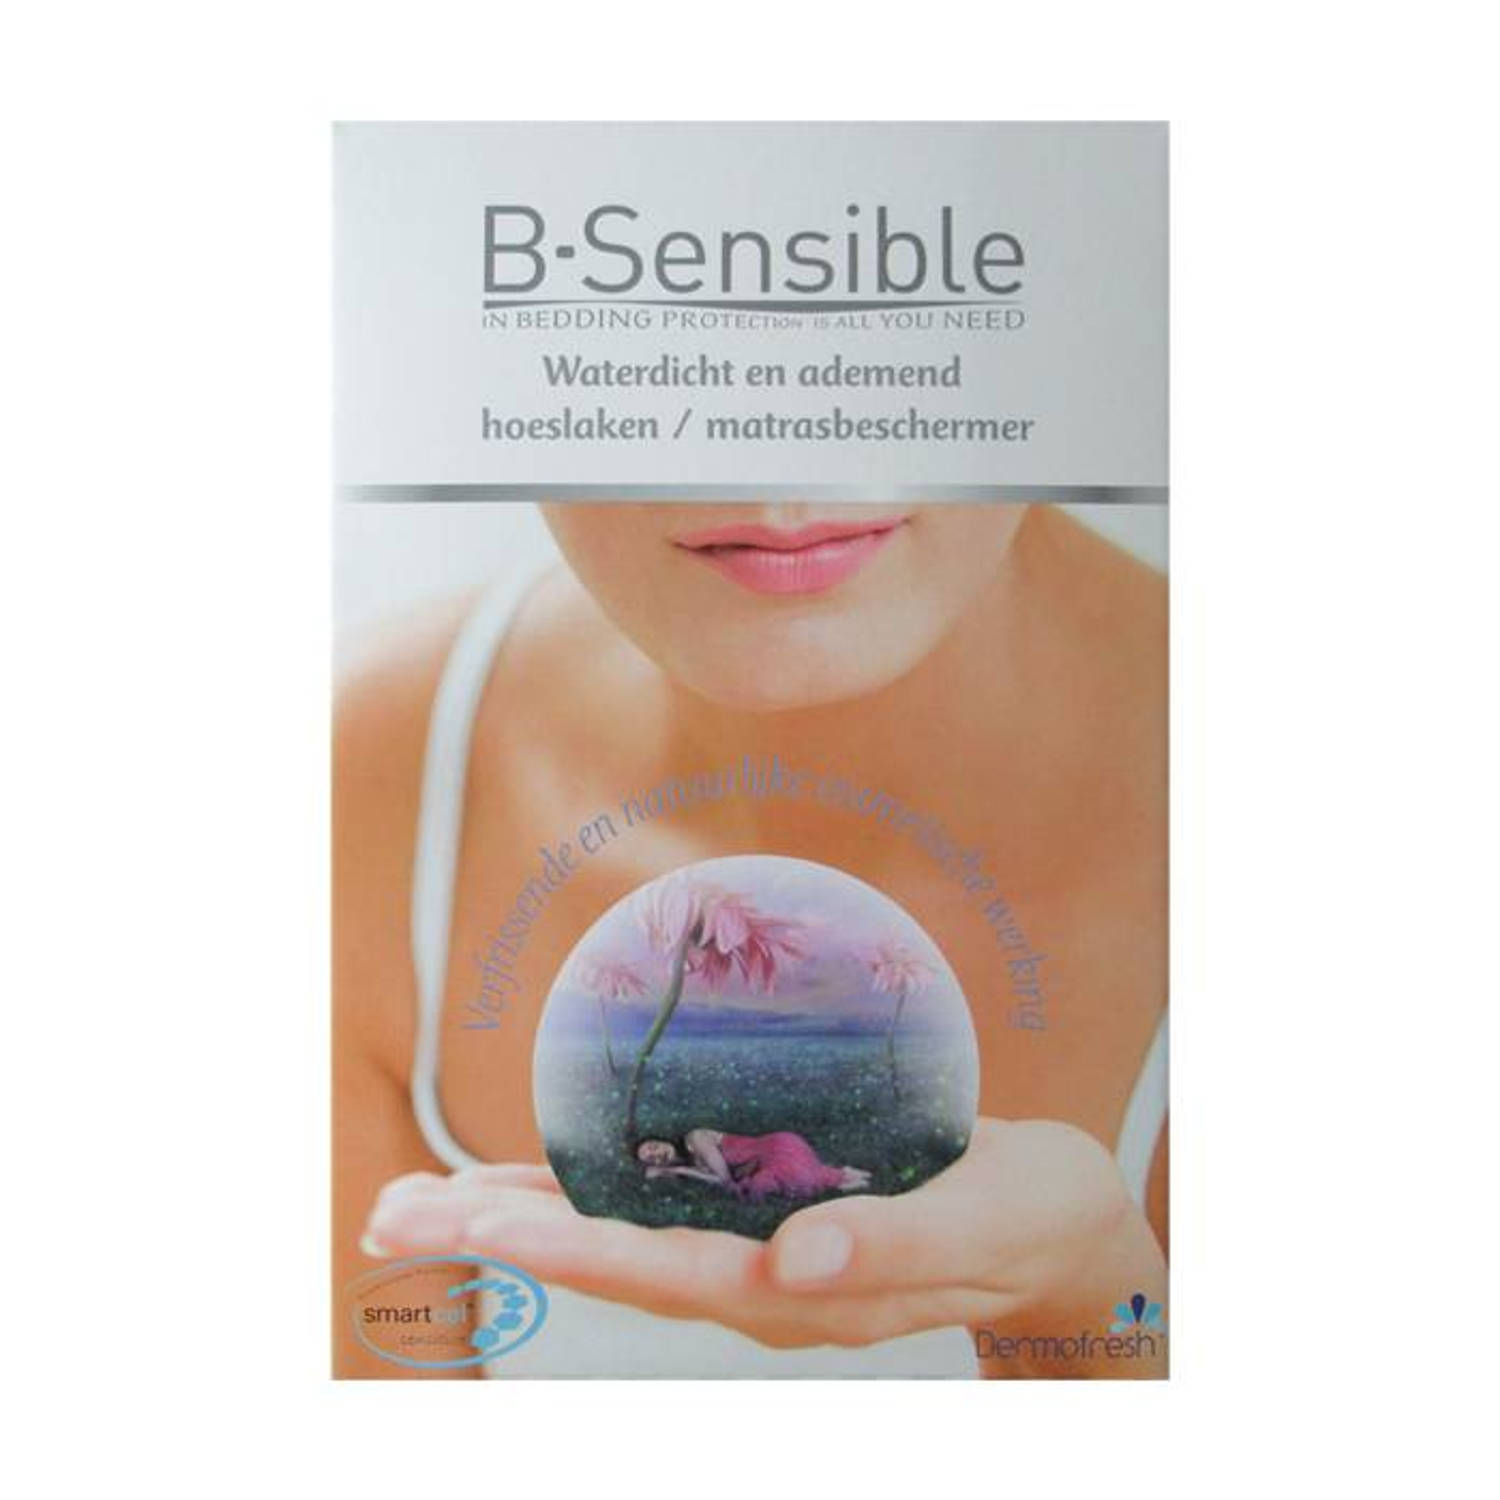 B-Sensible 2 in 1 waterdicht & ademend hoeslaken + matrasbeschermer - Wit - 160x220